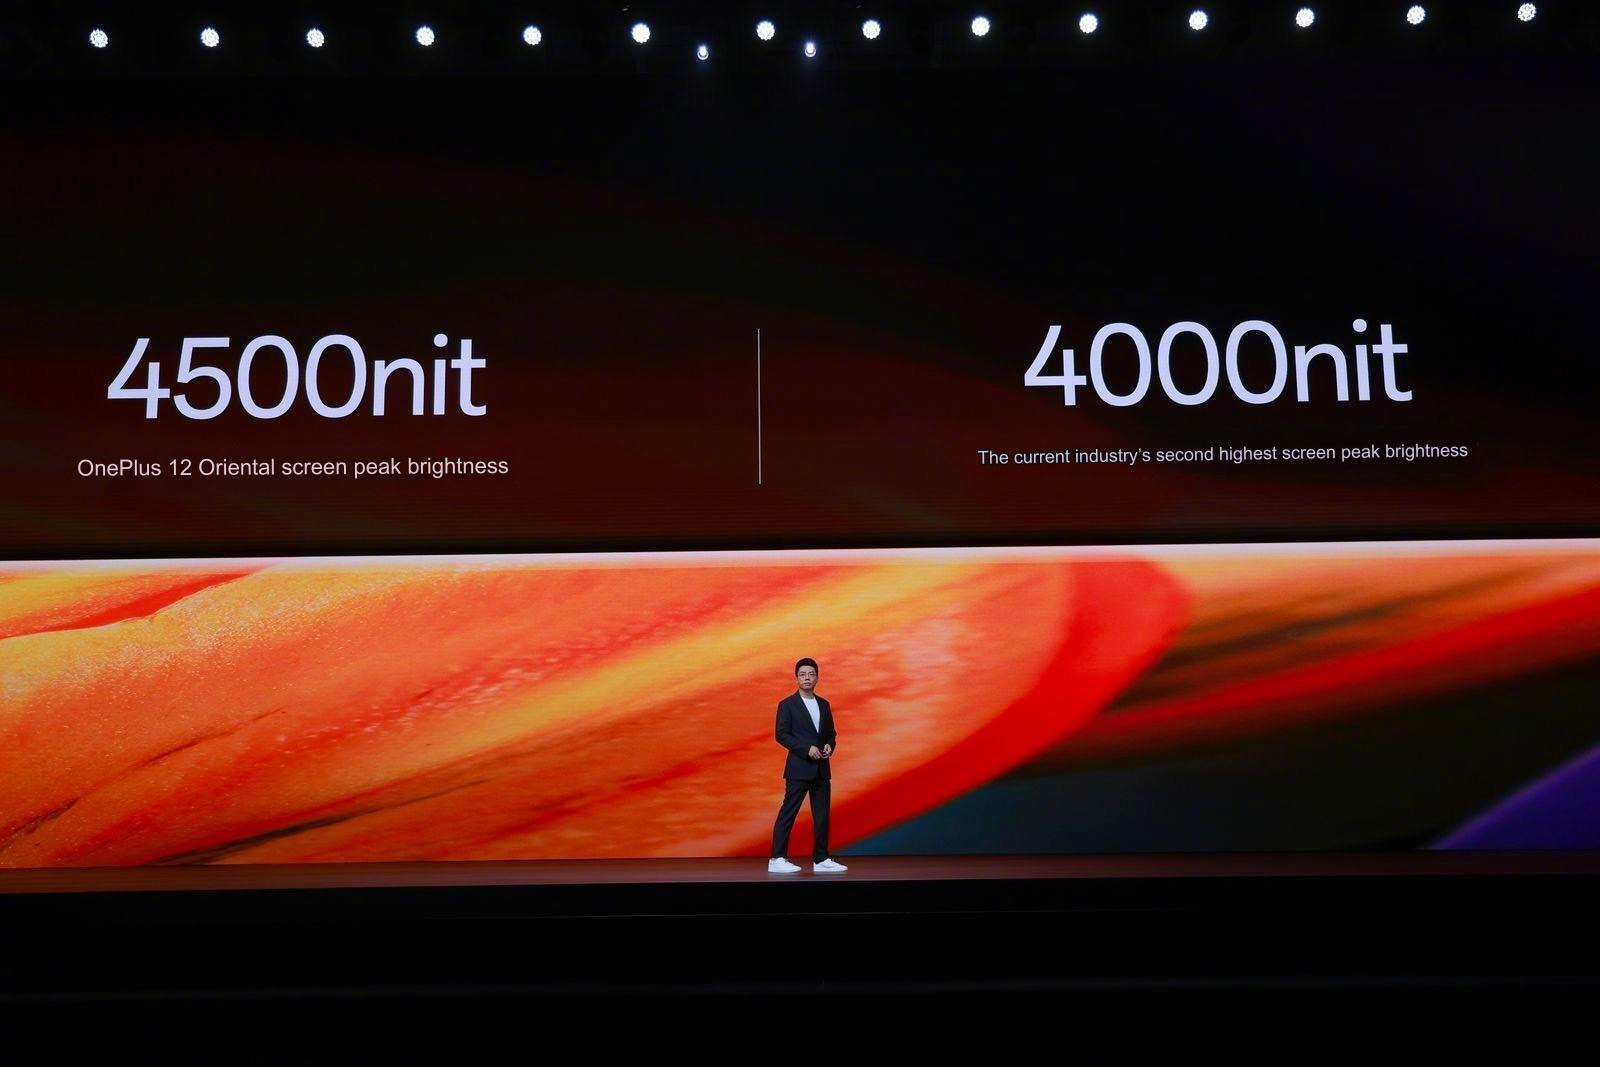 Ложь или маркетинг: что на самом деле означает яркость экрана 4600 нит у  OnePlus 12? — Mobile-review.com — Все о мобильной технике и технологиях